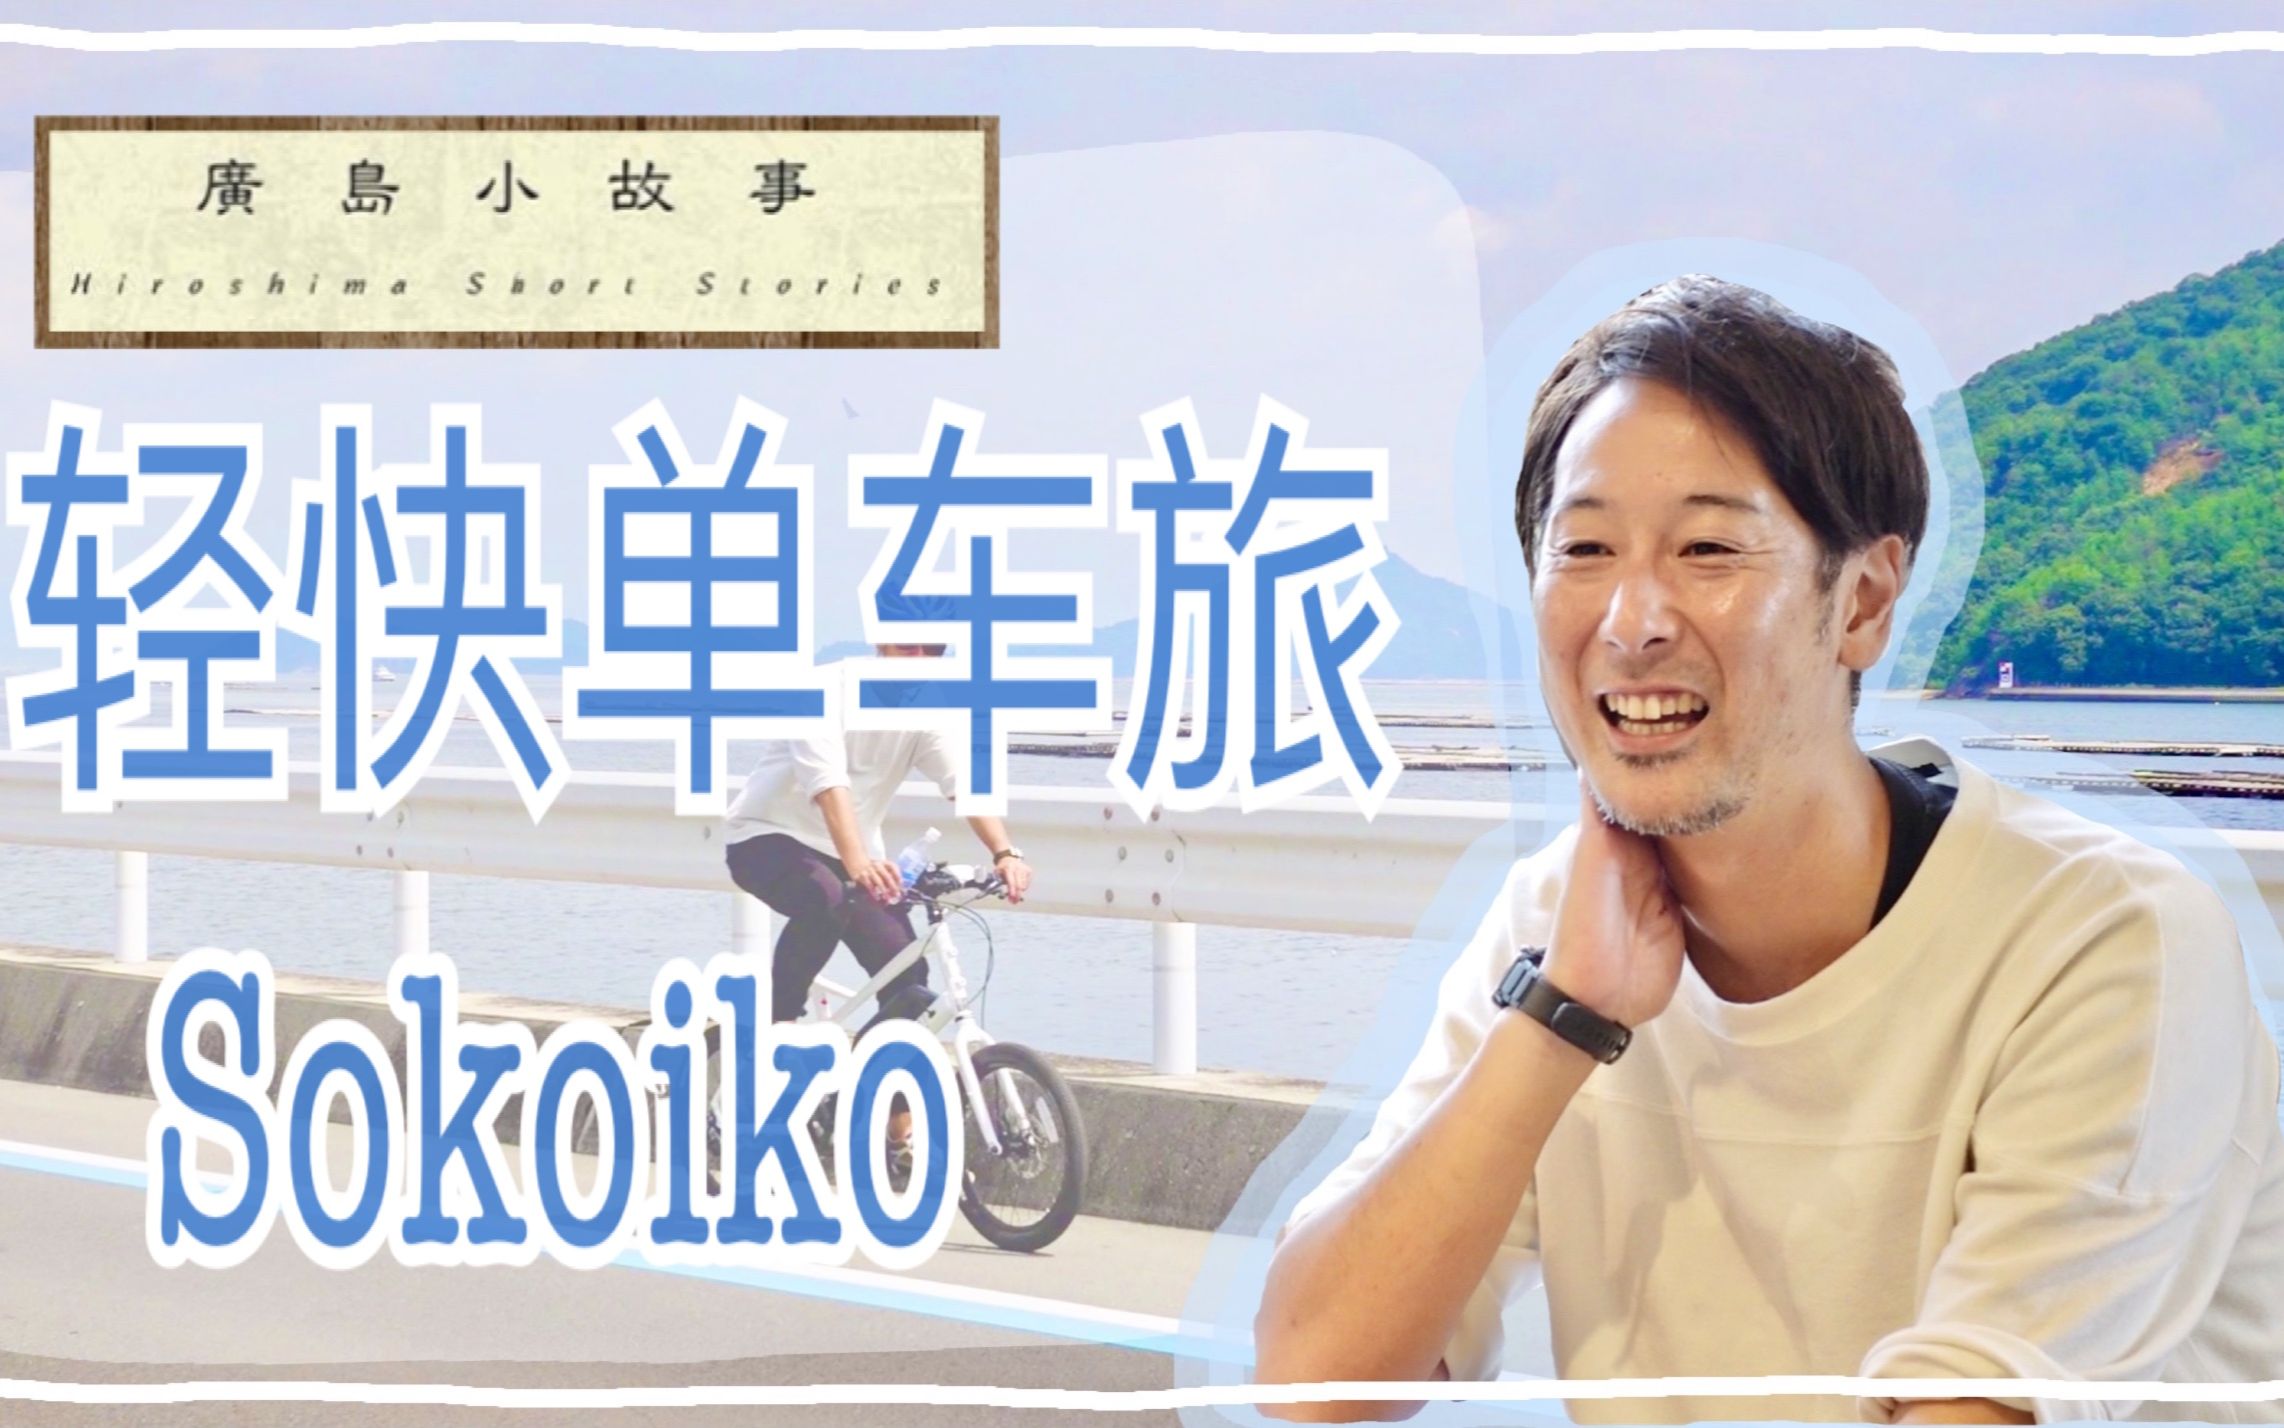 【广岛小故事 #11】环岛骑行体验「sokoiko」，土生土长的广岛向导带你感受观光景点以外的城市美景与风土人情